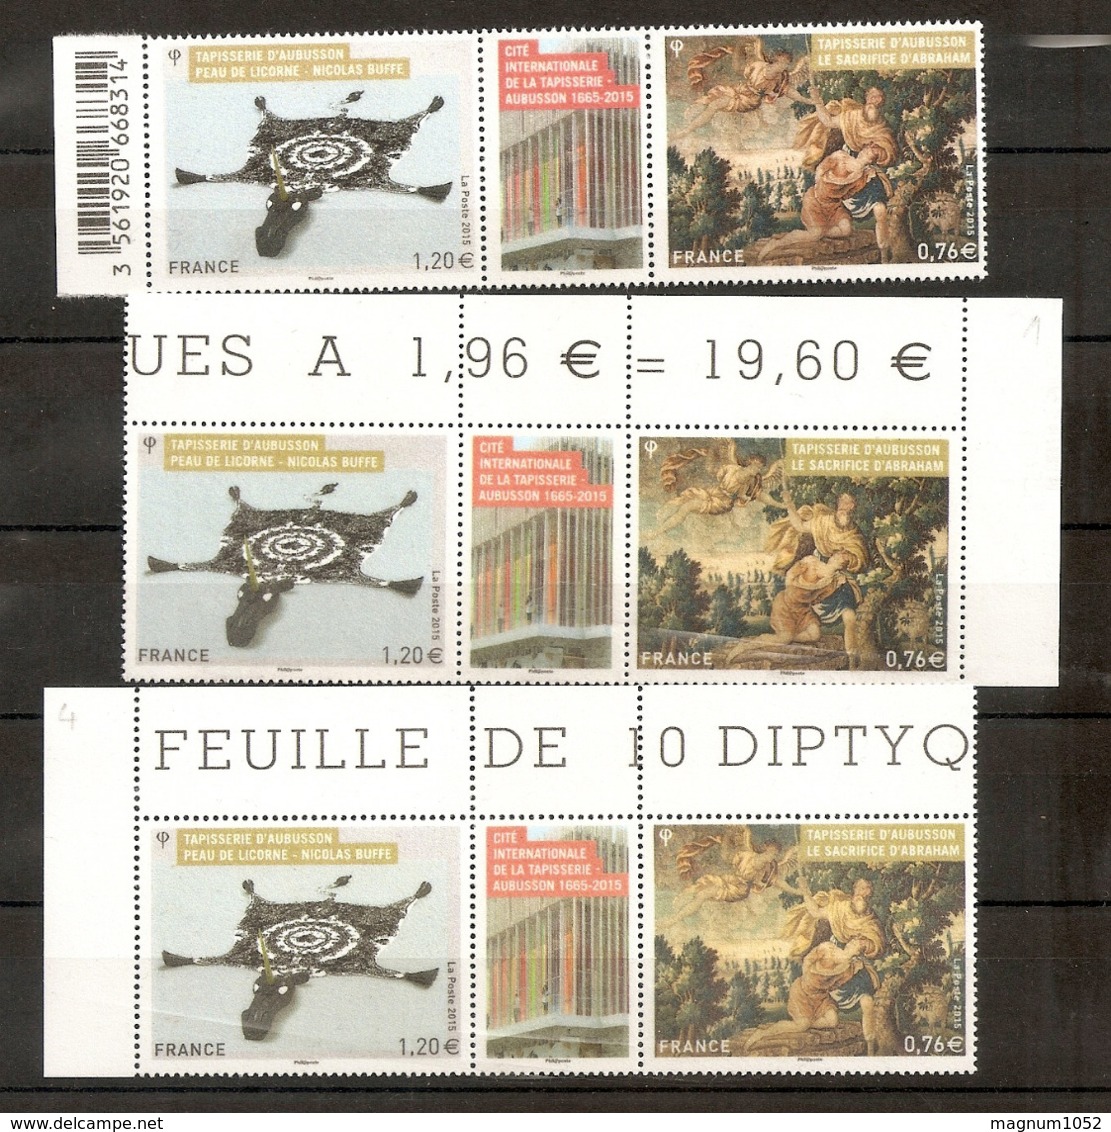 VARIETES  DYPTIQUE X 3 TAPISSERIE D'AUBUSSON **  NUANCES DES COULEURS - TRES VISIBLE AUX SCANNS - RRR !!! - Unused Stamps